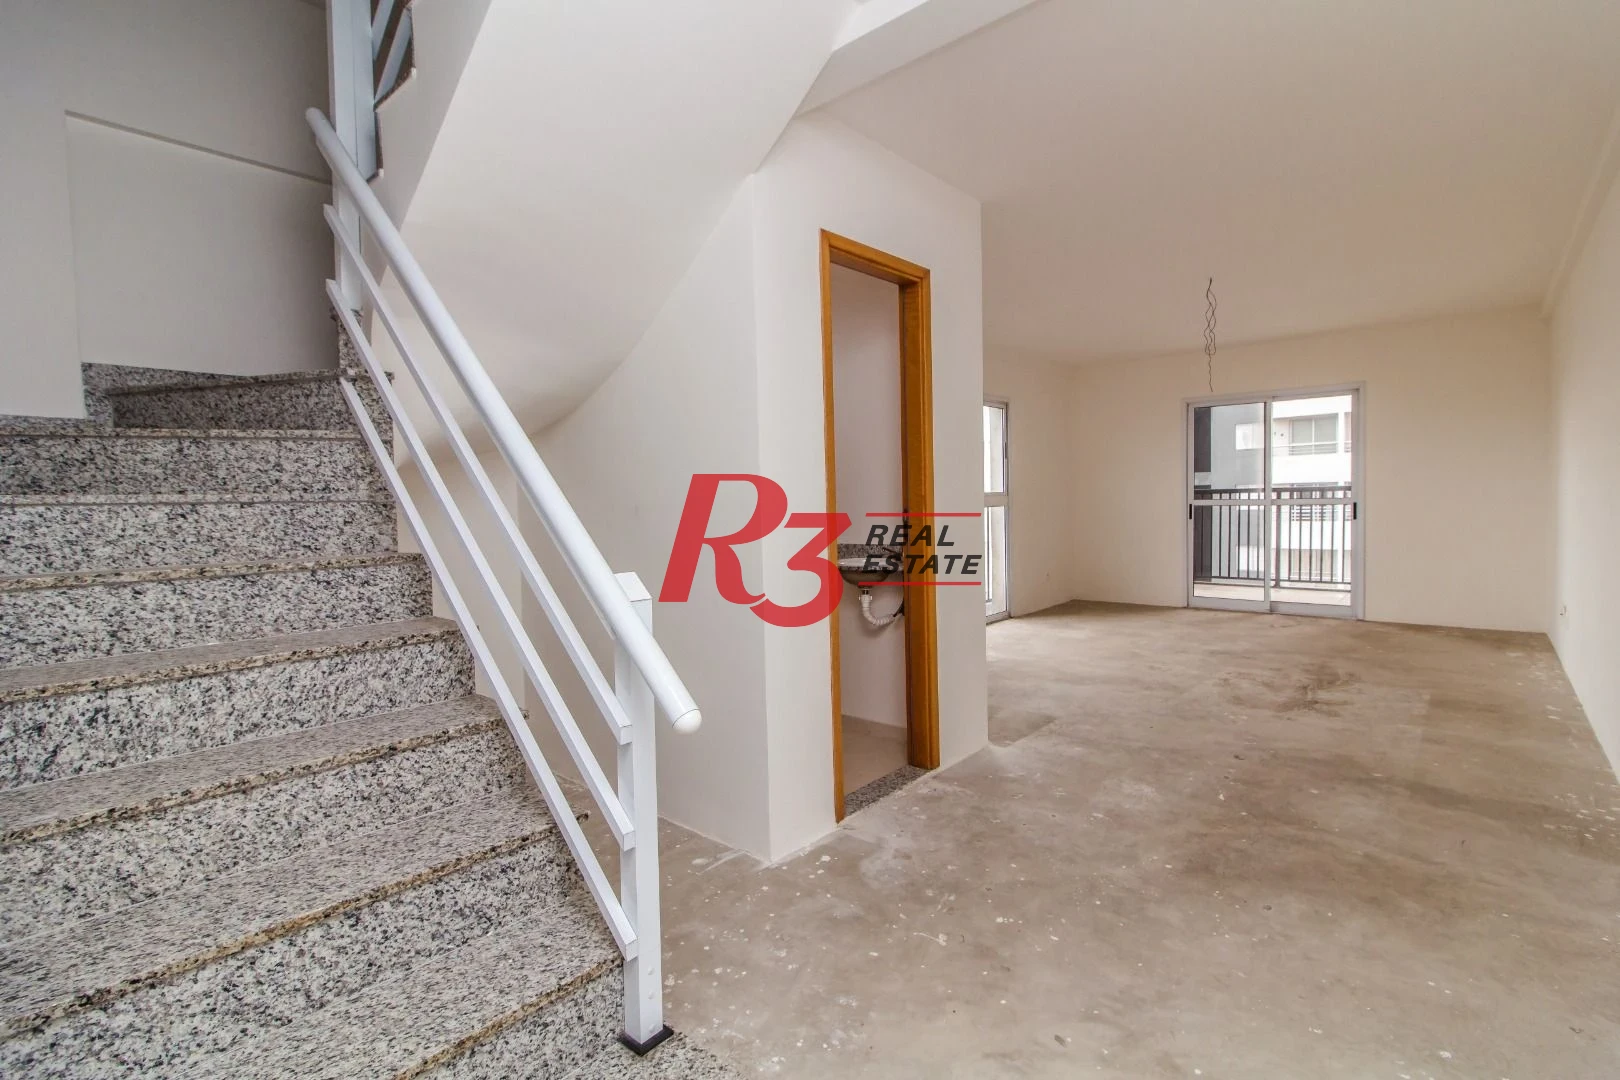 Apartamento Duplex com 3 dormitórios à venda, 128 m² por R$ 879.000 - Encruzilhada - Santos - SP